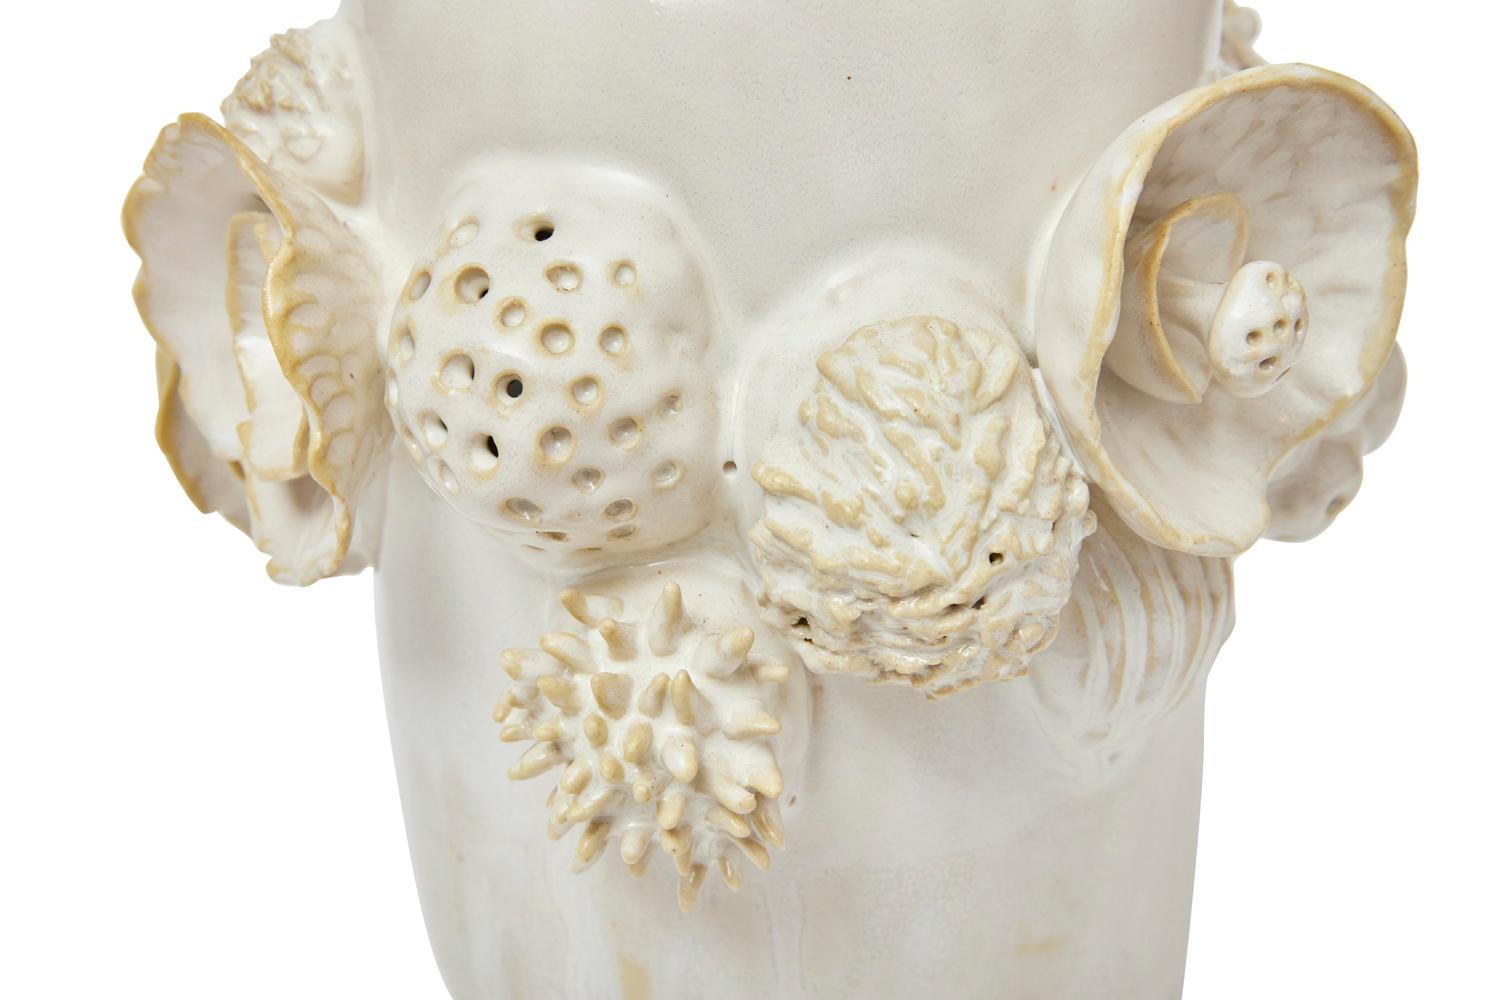 Botanica Vessel in Glazed Ceramic by Trish DeMasi For Sale 1